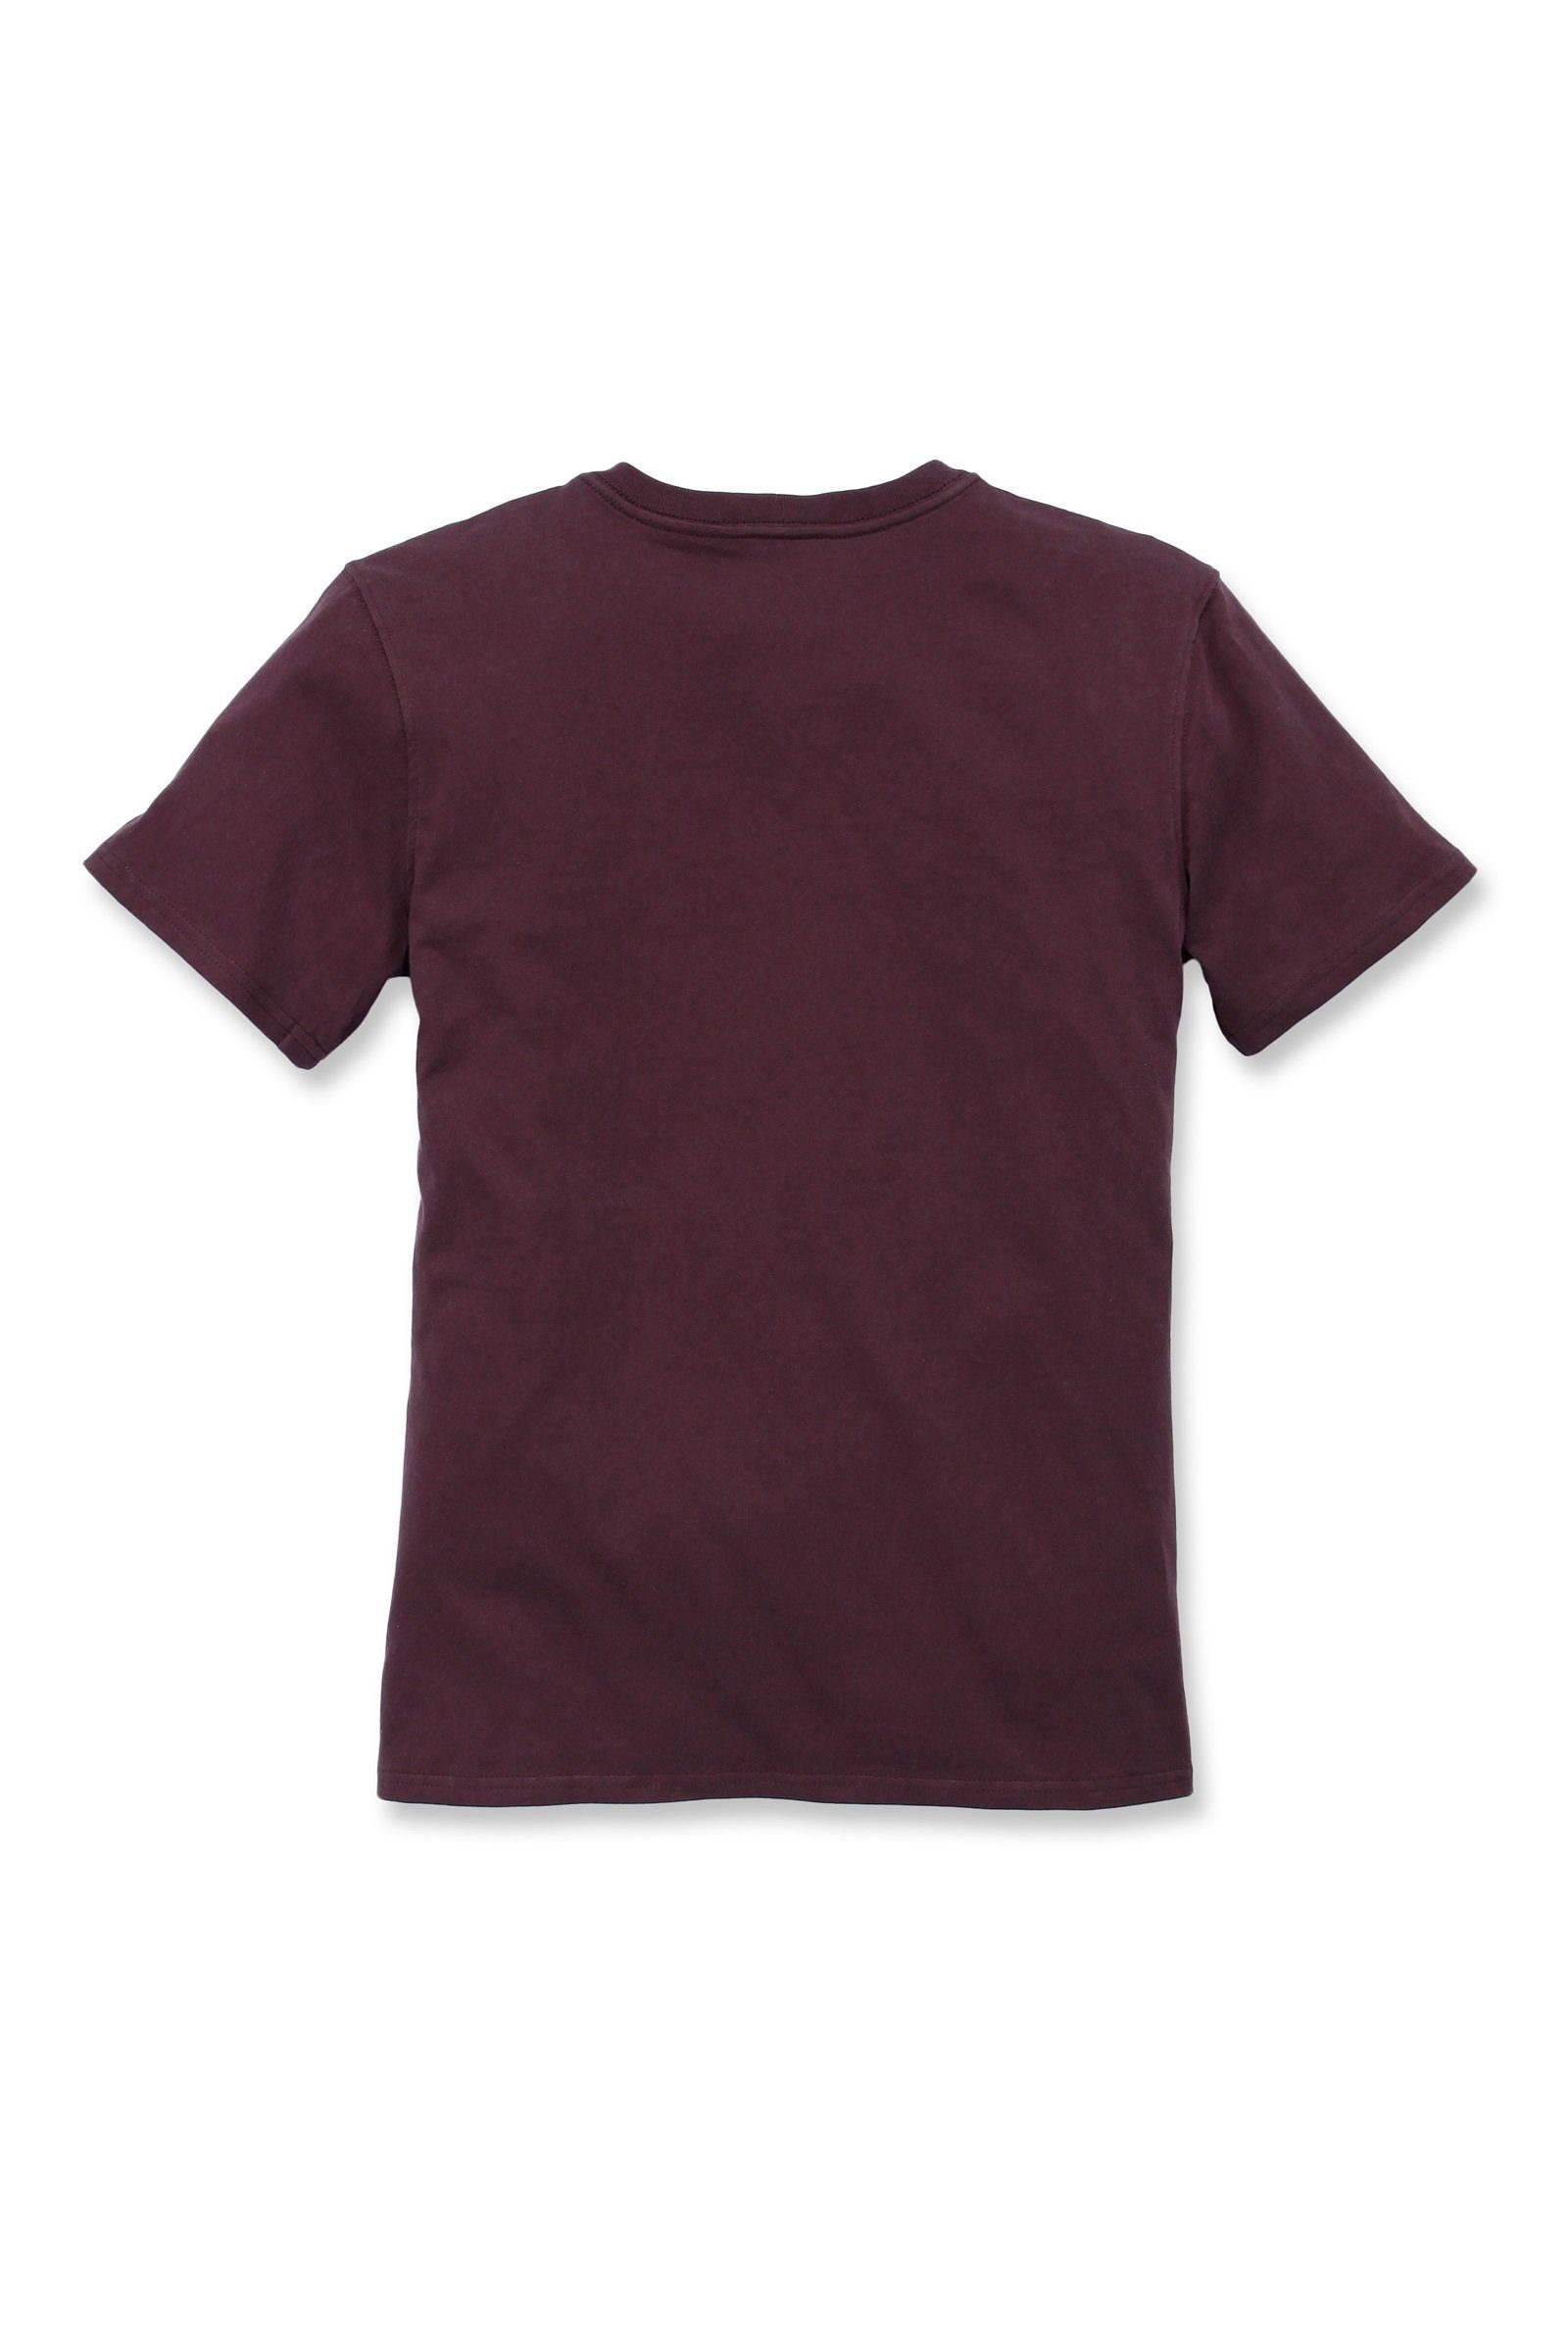 Short-Sleeve Loose wine Adult Fit T-Shirt T-Shirt Carhartt Heavyweight Carhartt deep Damen Pocket